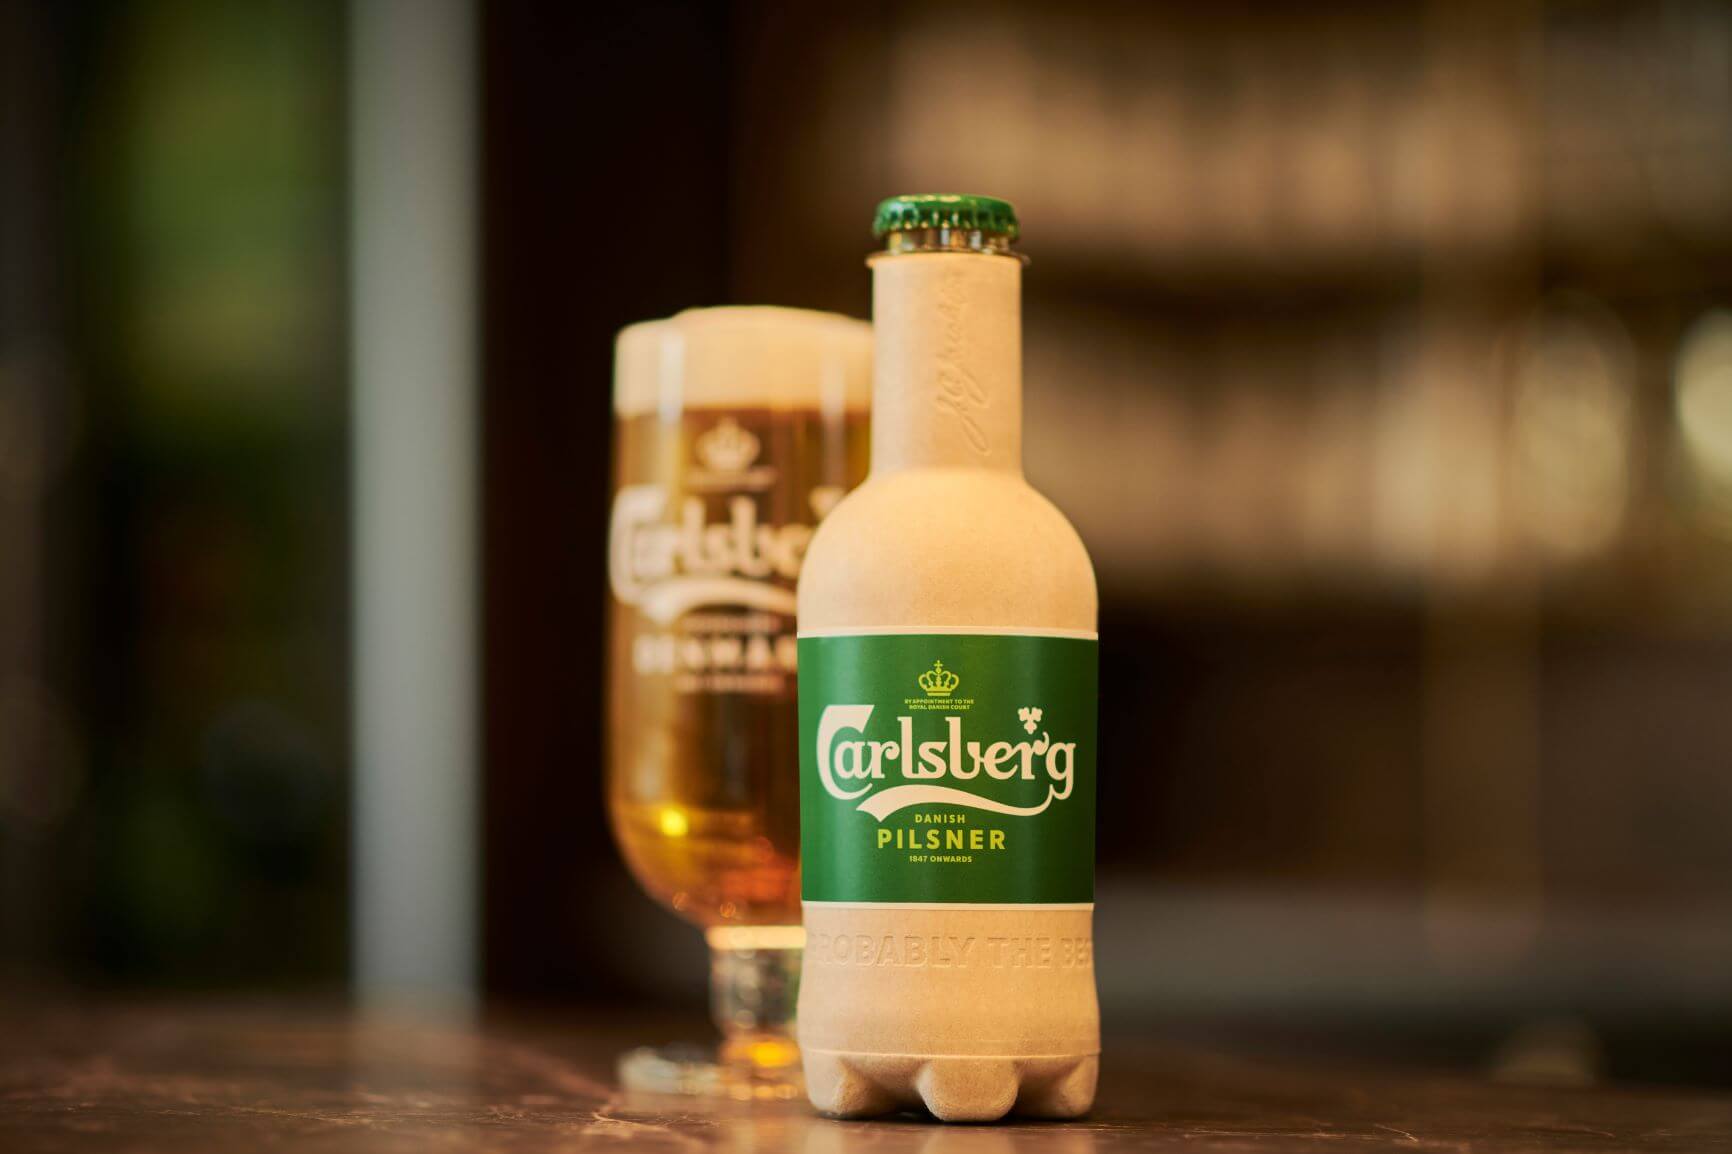 Garrafa de cerveja Carlsberg feita de fibra natural e biopolímeros